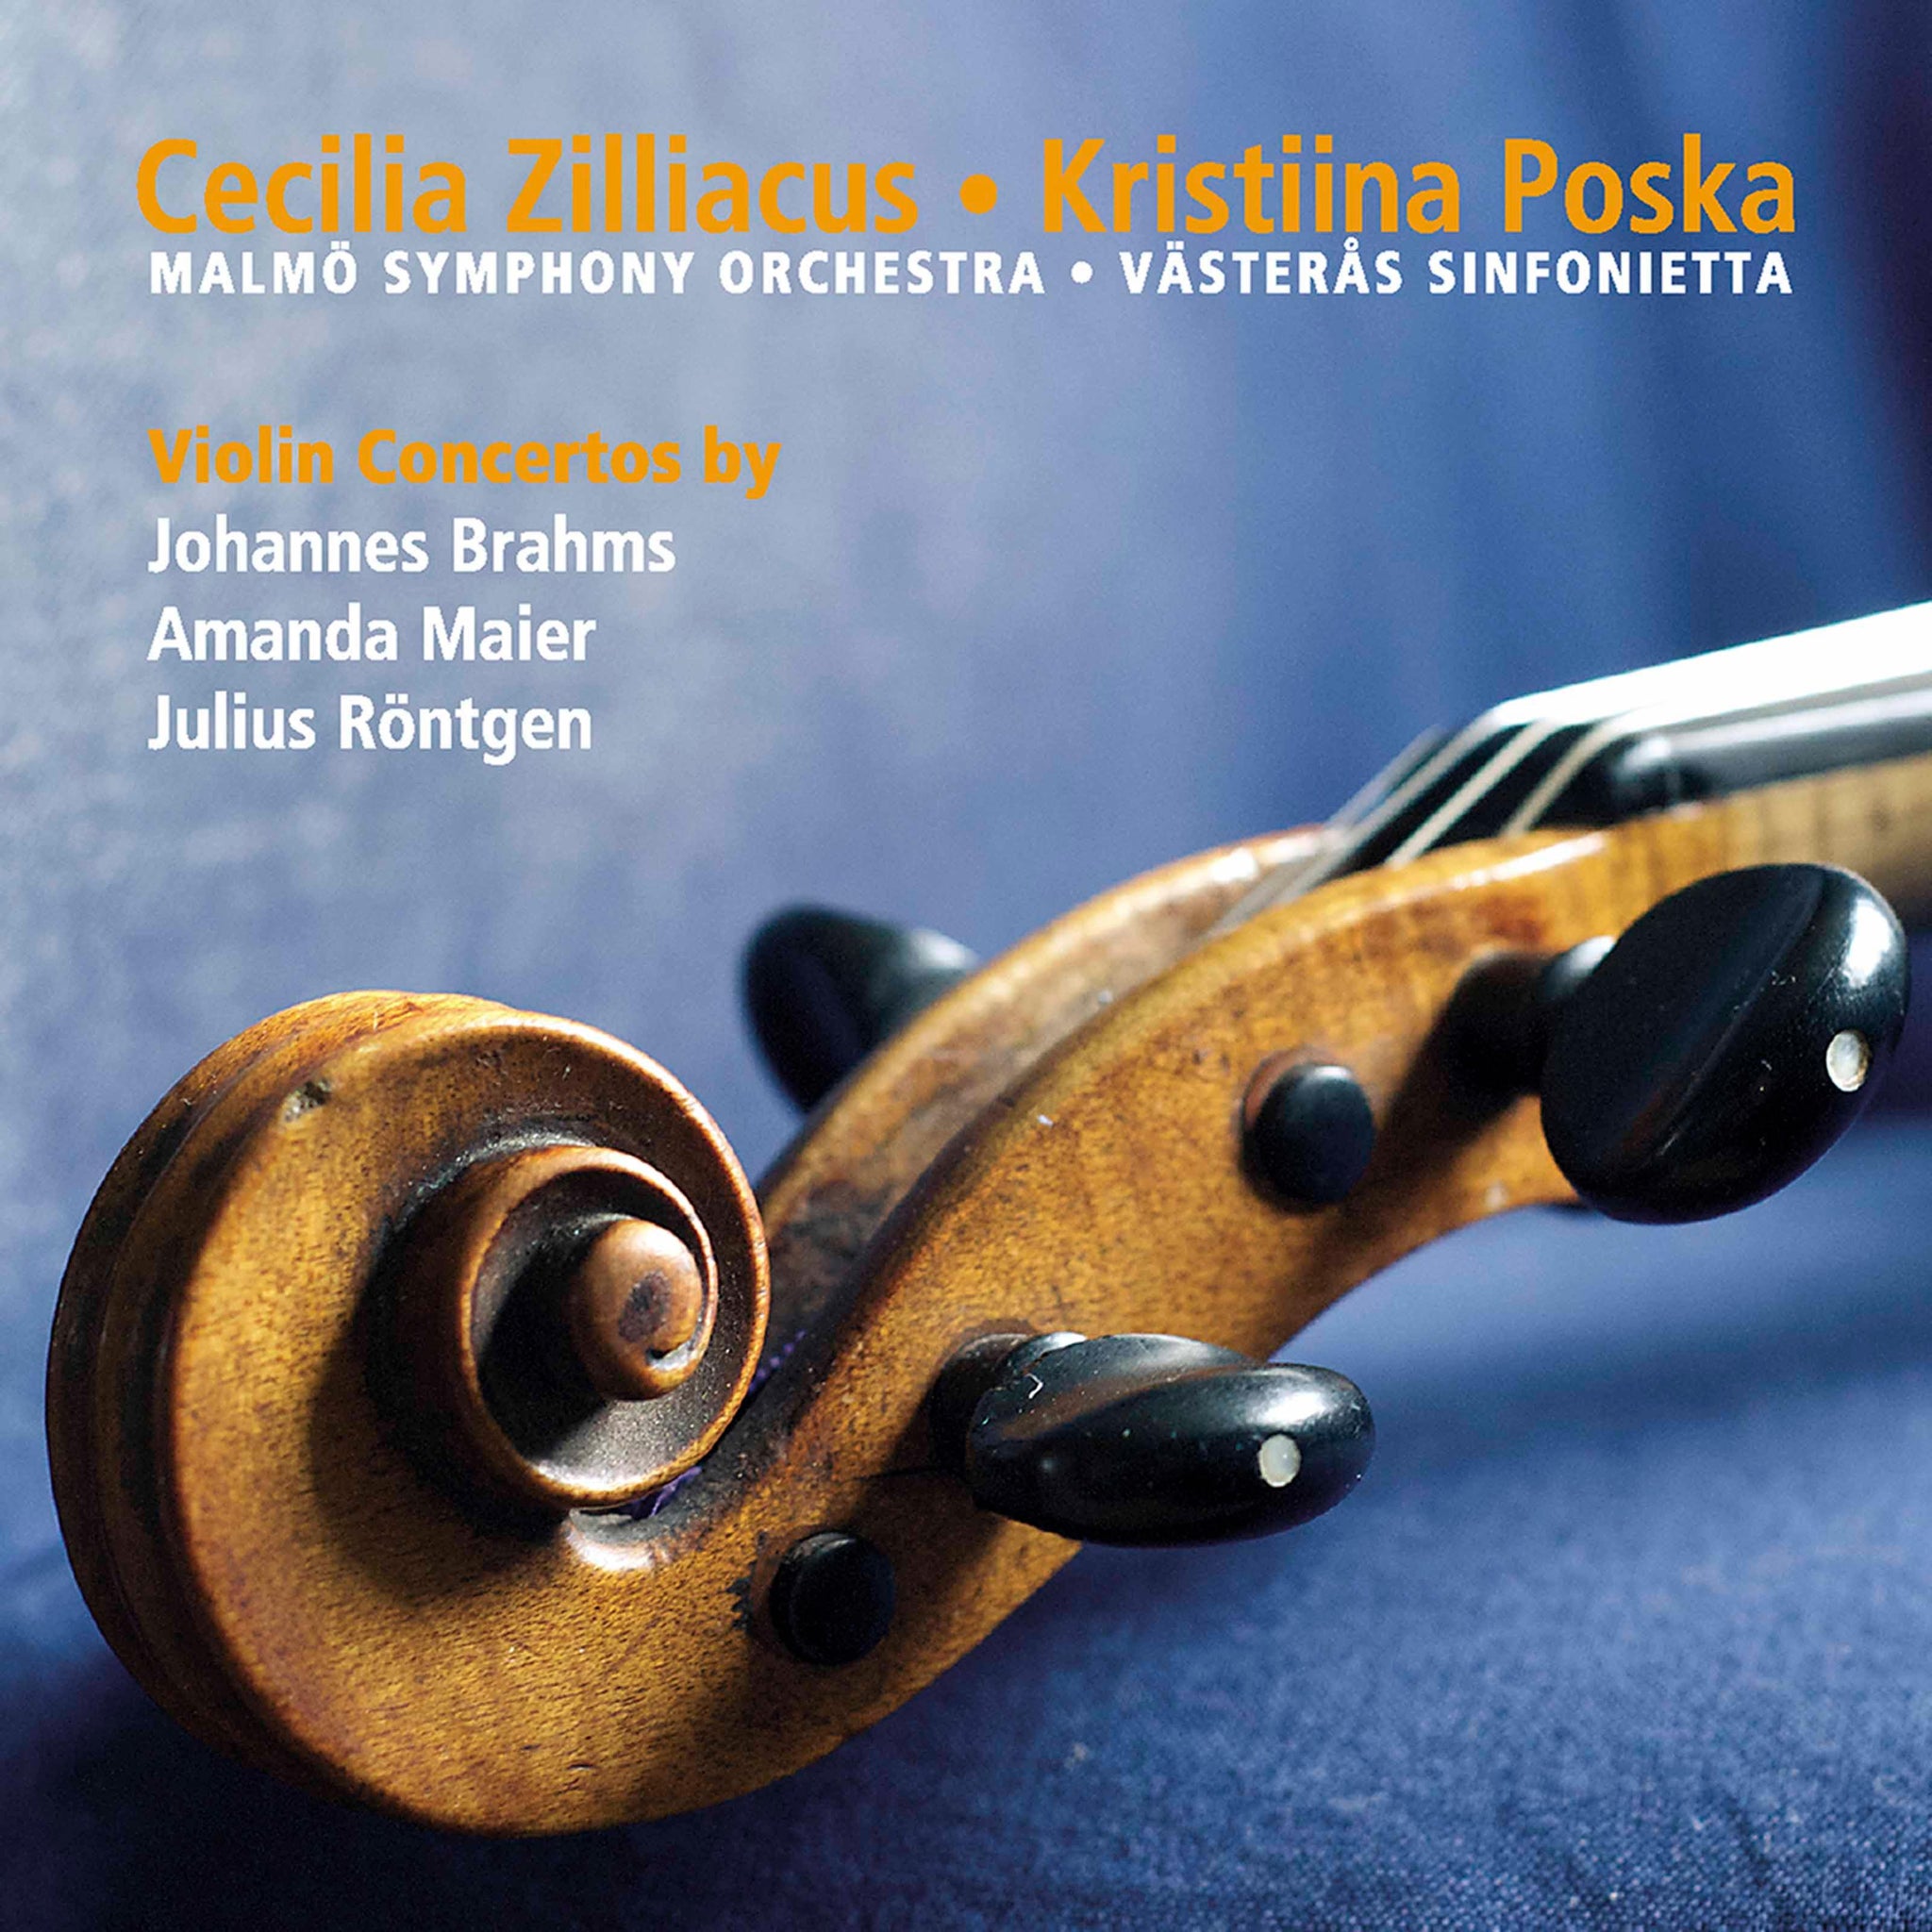 Brahms, Maier, Röntgen: Violin Concertos / Zilliacus, Poska, Västerås Sinfonietta, Malmö Symphony Orchestra - ArkivMusic